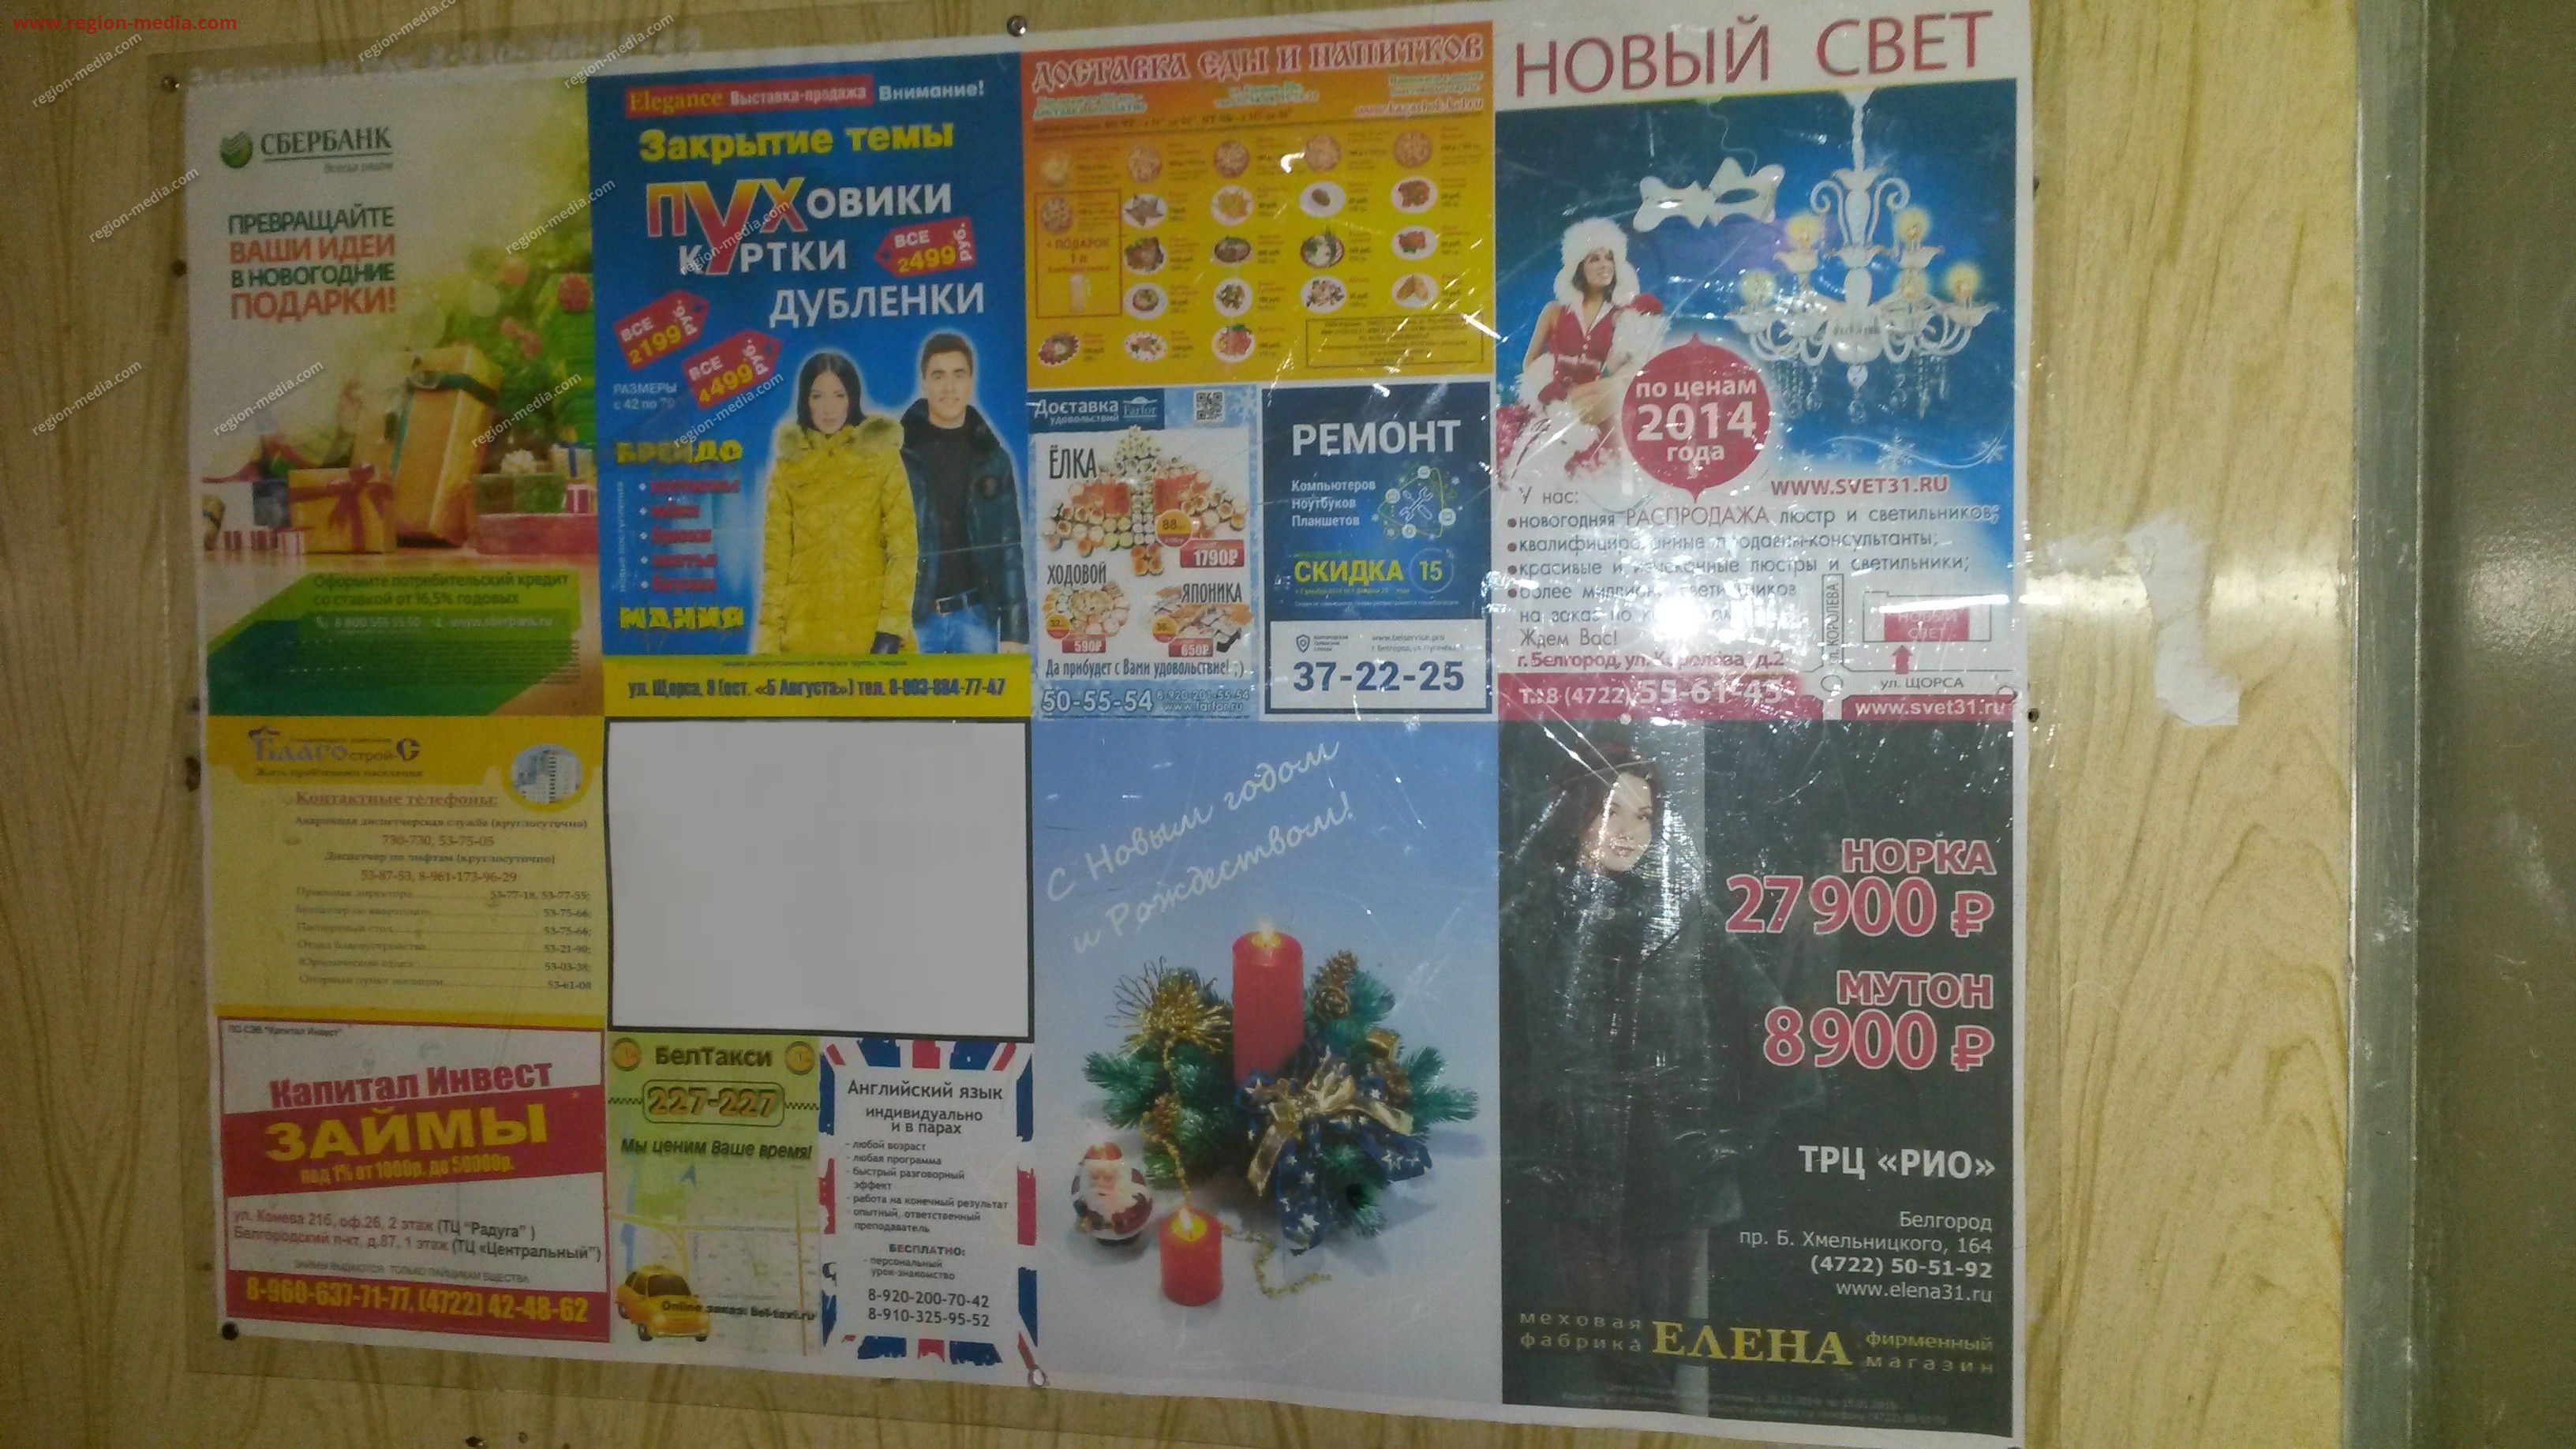 Размещение рекламы  компании "Сбербанк" на щитах 3х6  в Ставрополе